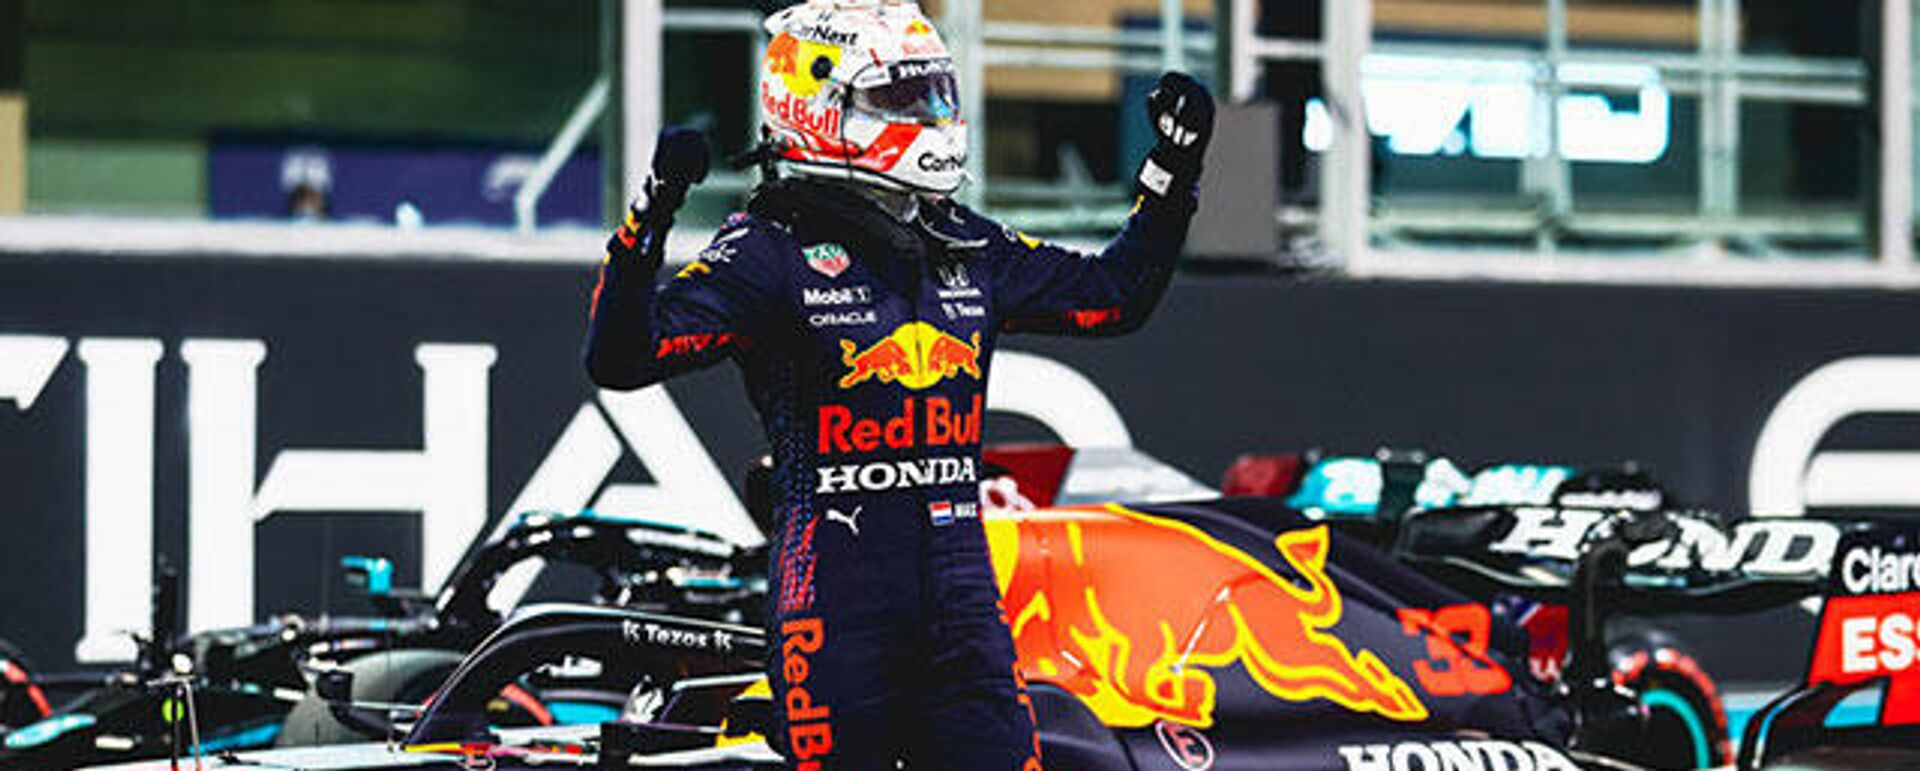 Formula 1'de Red Bull-Honda takımından Max Verstappen şampiyon oldu - Sputnik Türkiye, 1920, 23.04.2022